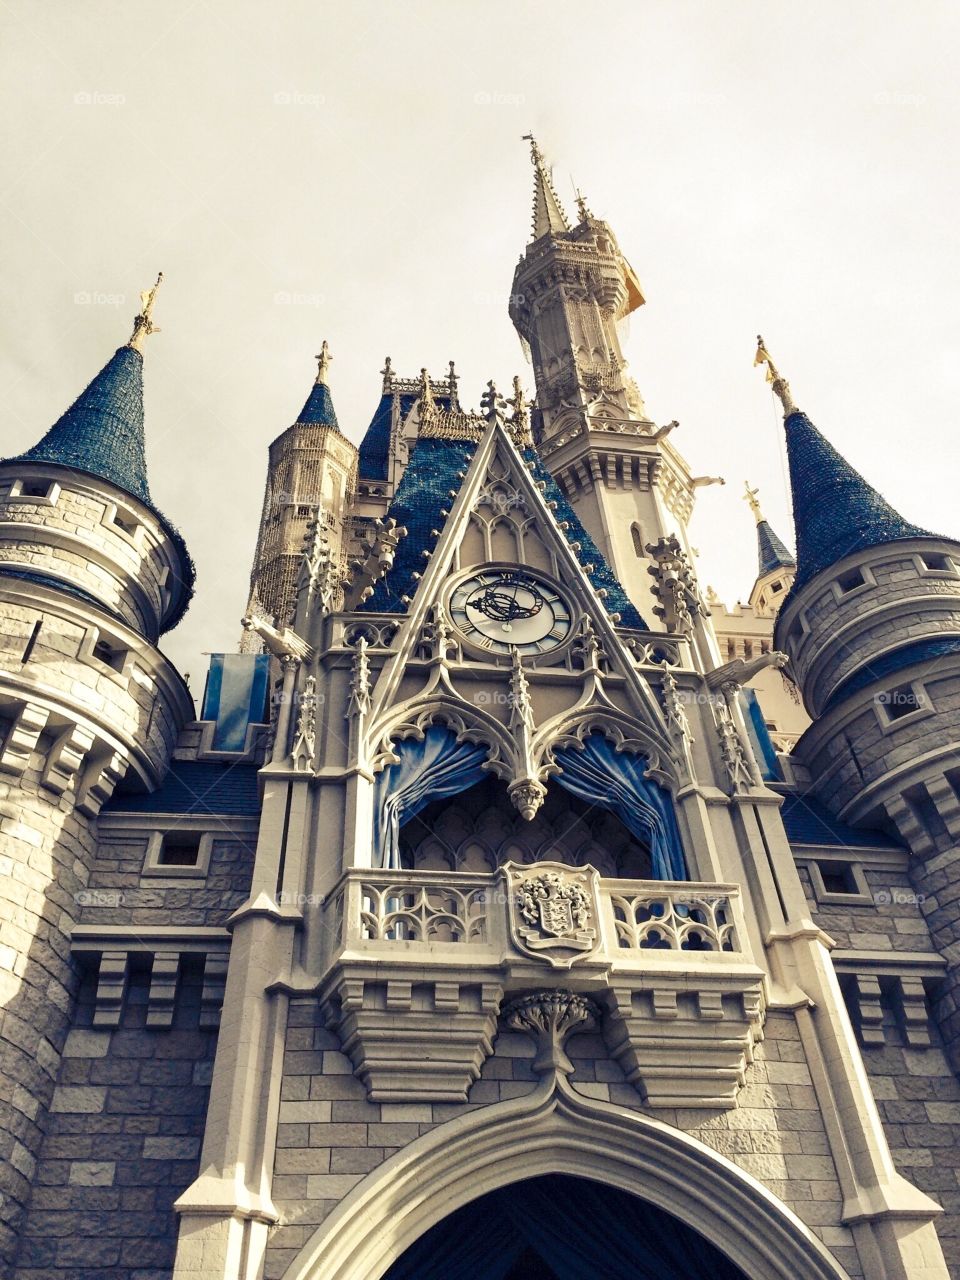 Cinderellas castle At Disney World